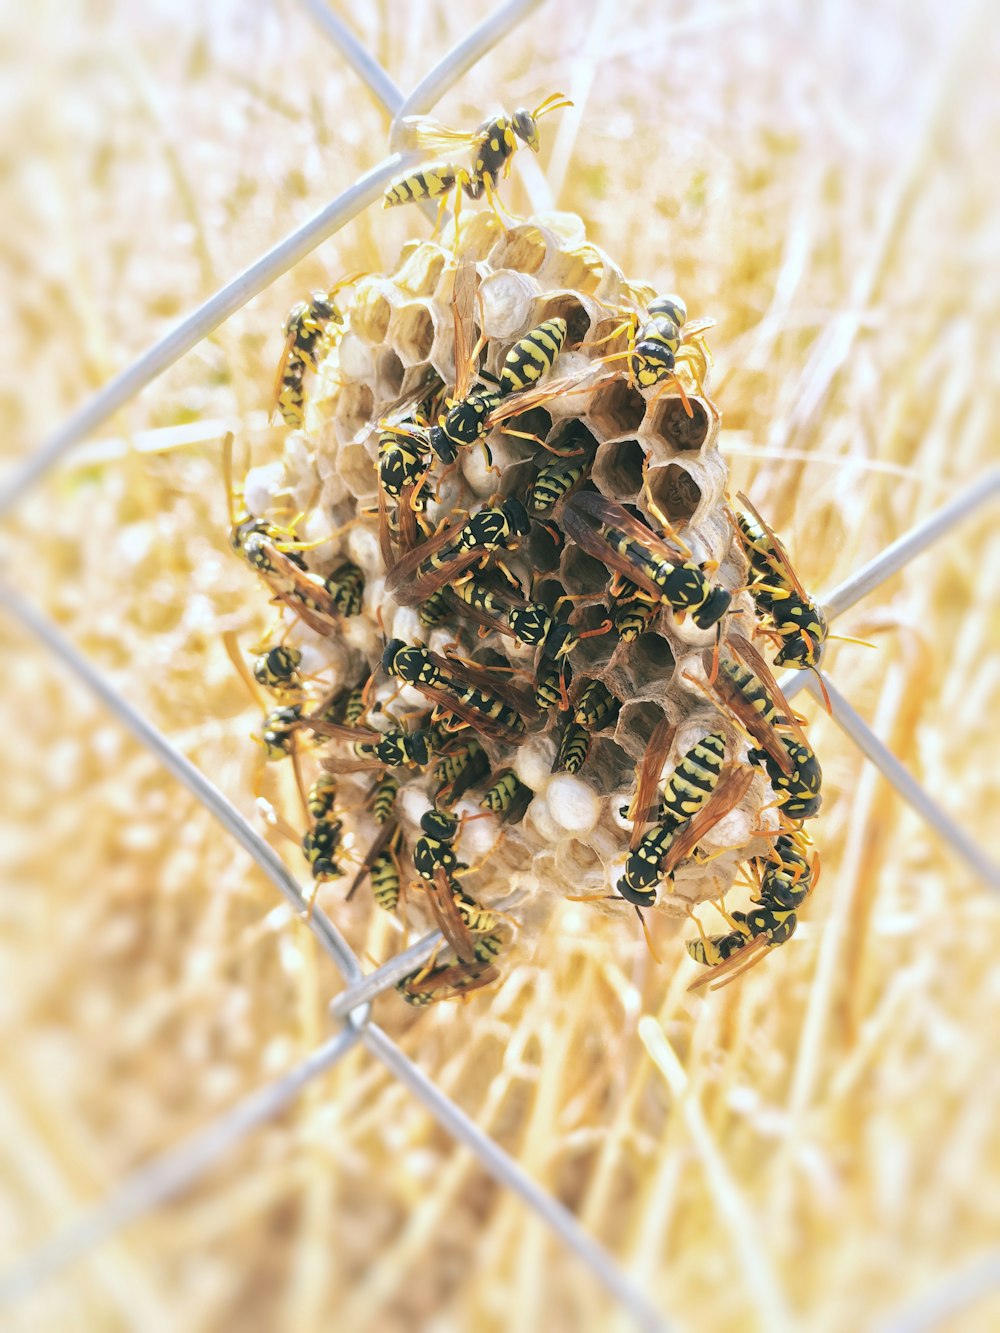 Schwarm von Gelbwestenwespen im Bienenstock